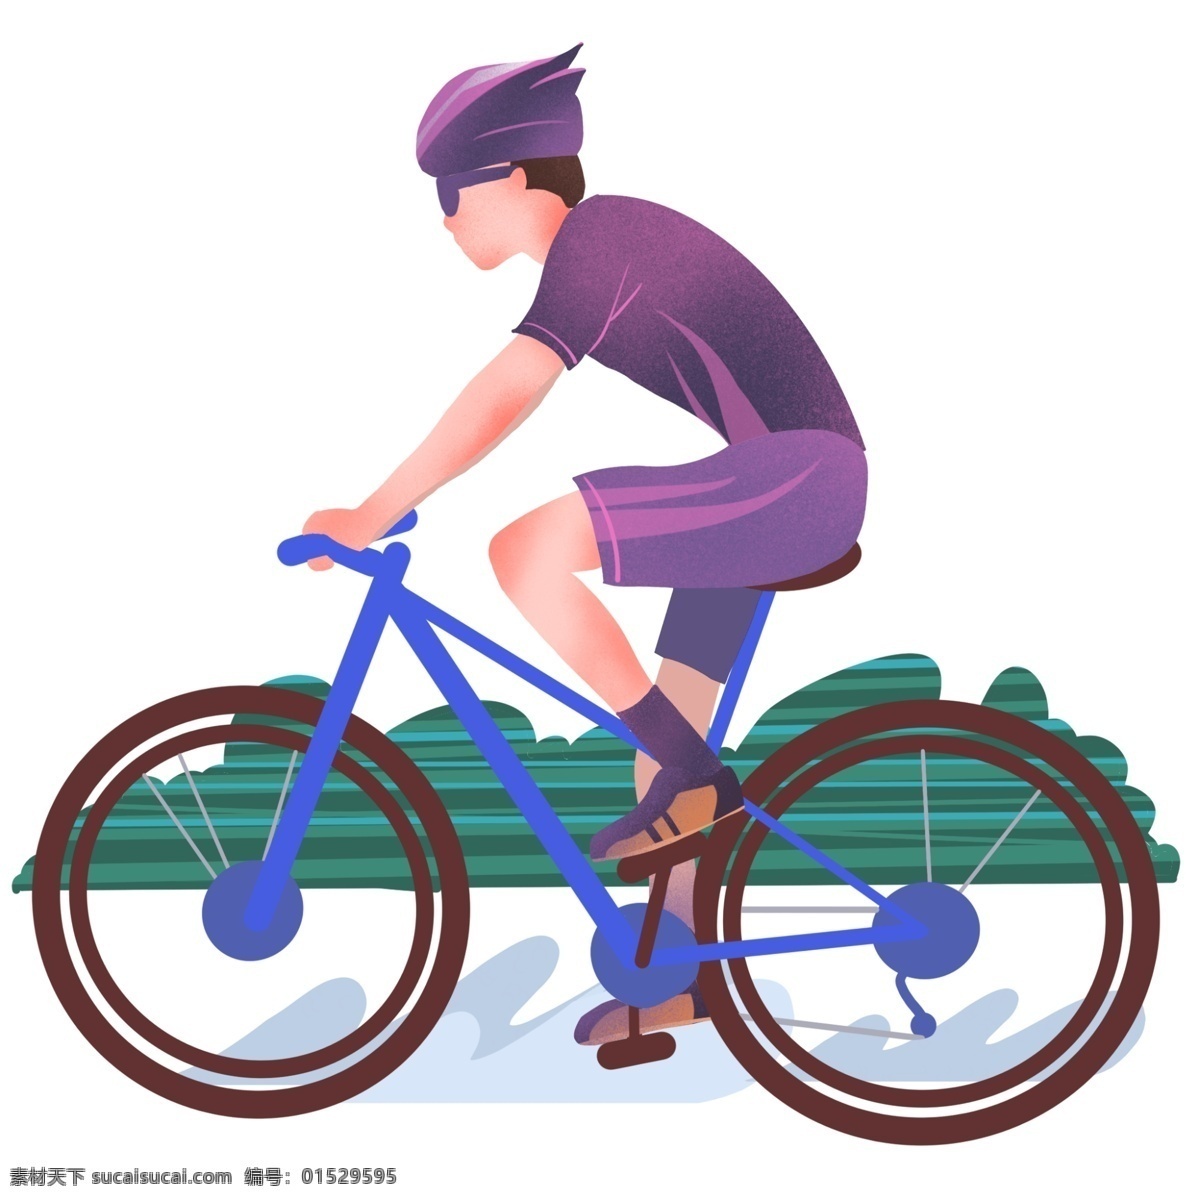 骑 自行车运动 男孩 插画 单车运动 骑单车的男孩 运动人物插画 健身 锻炼身体 卡通插画